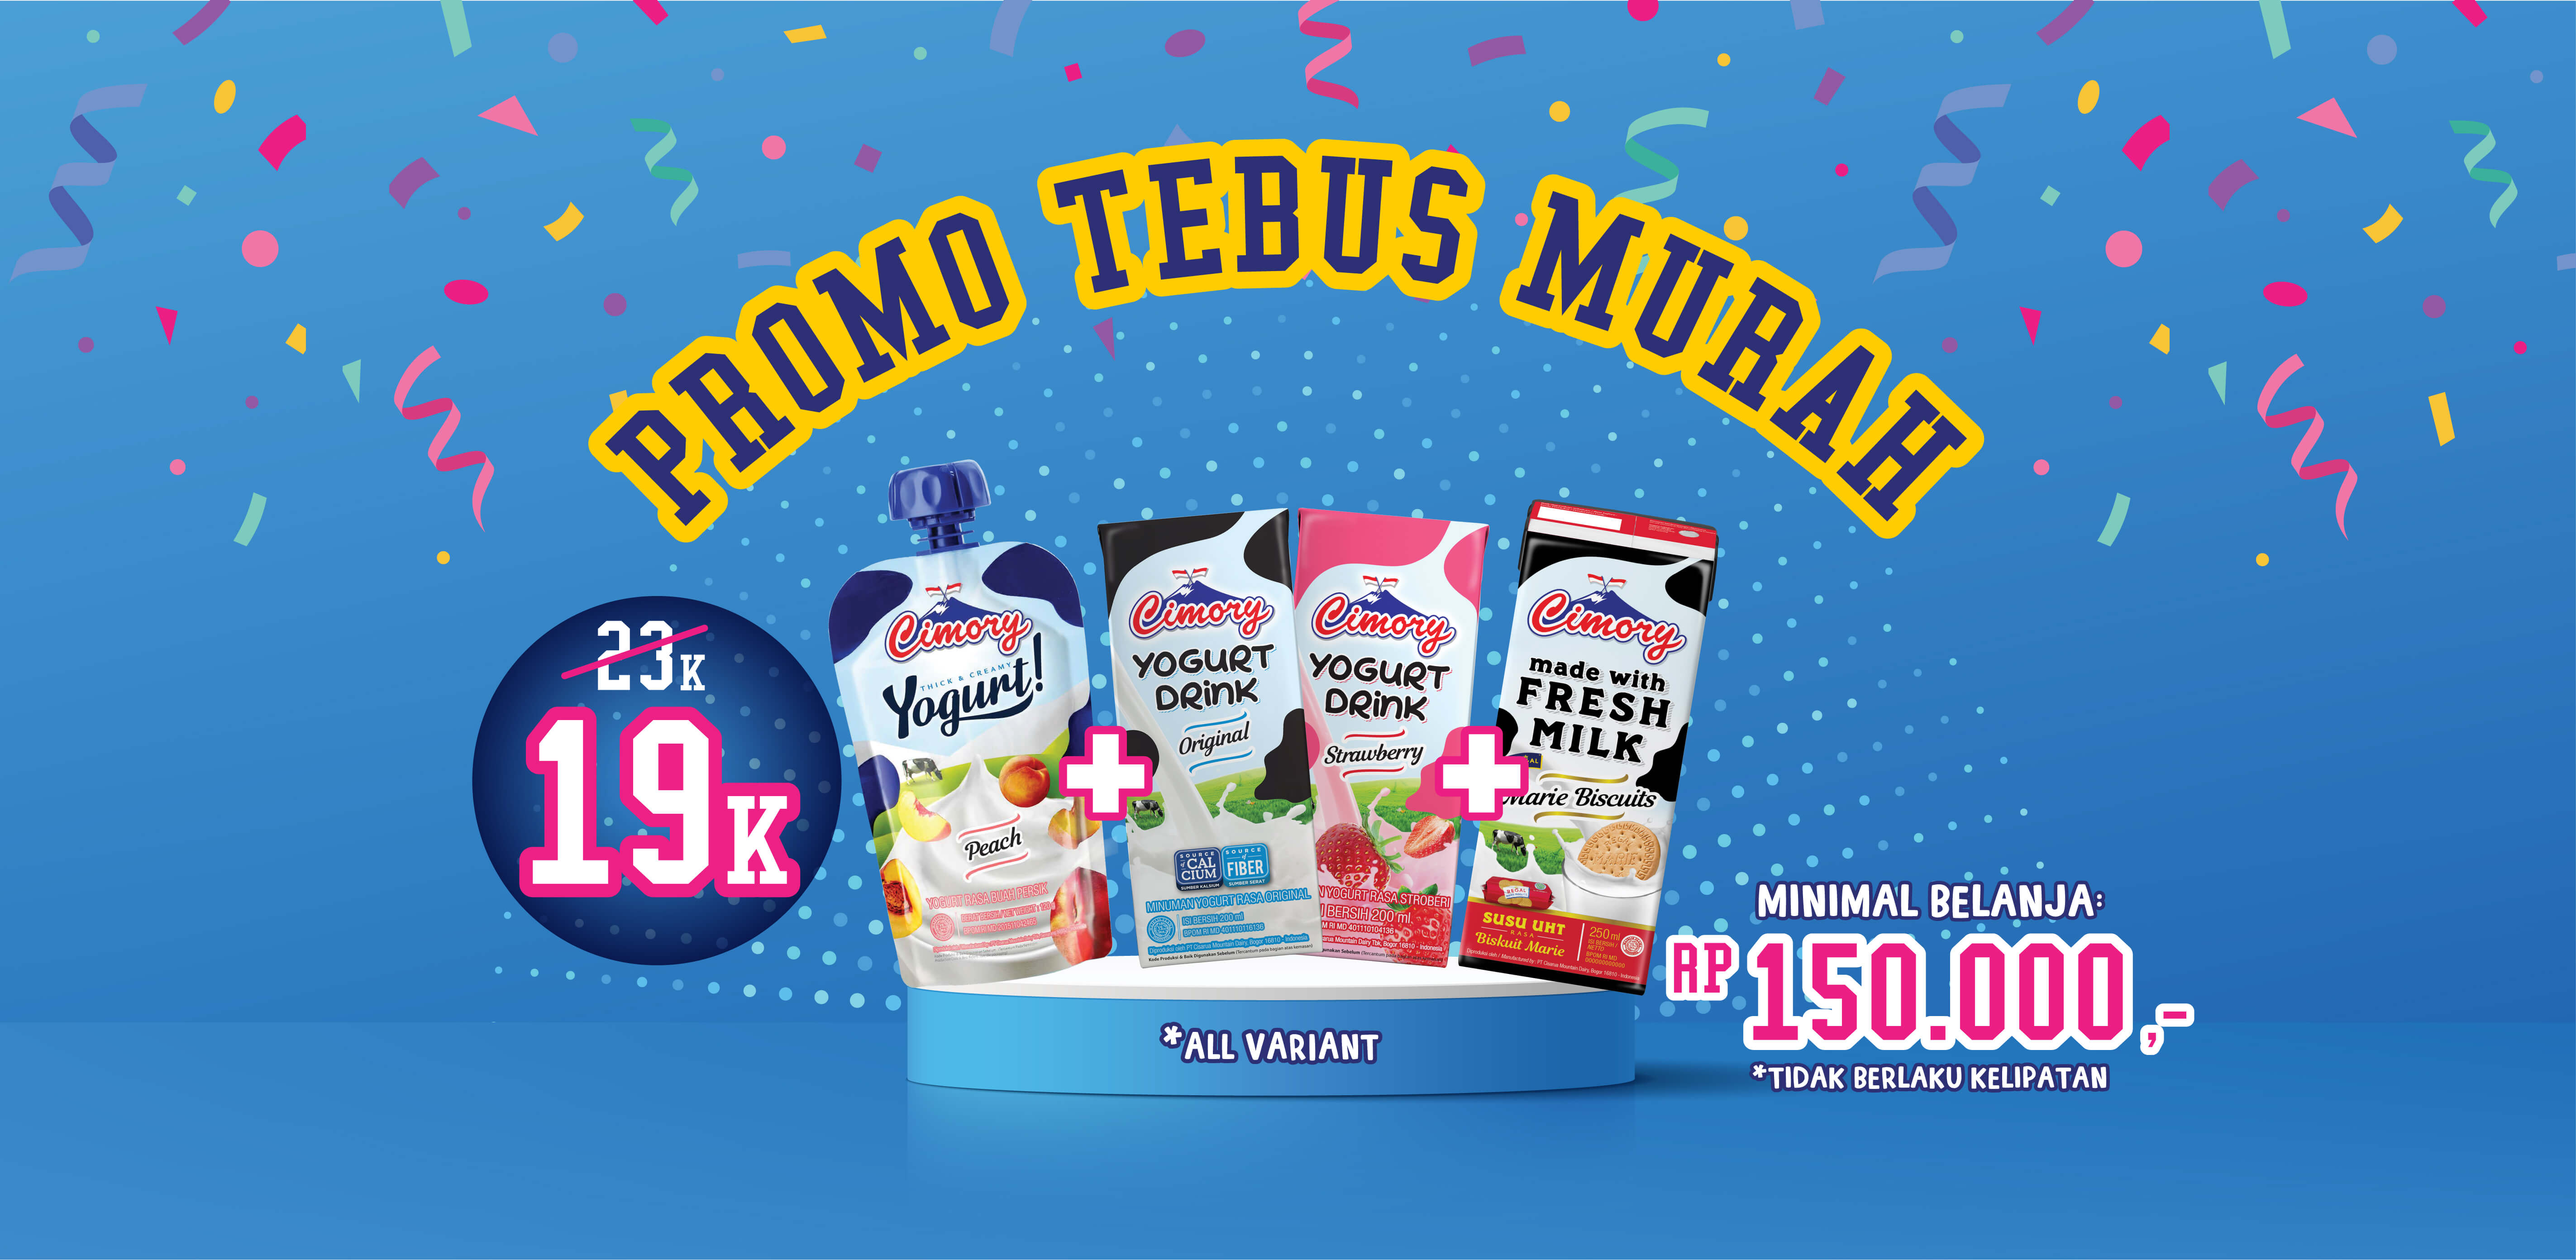 promo-tebus-murah-yogurt-milk-drink